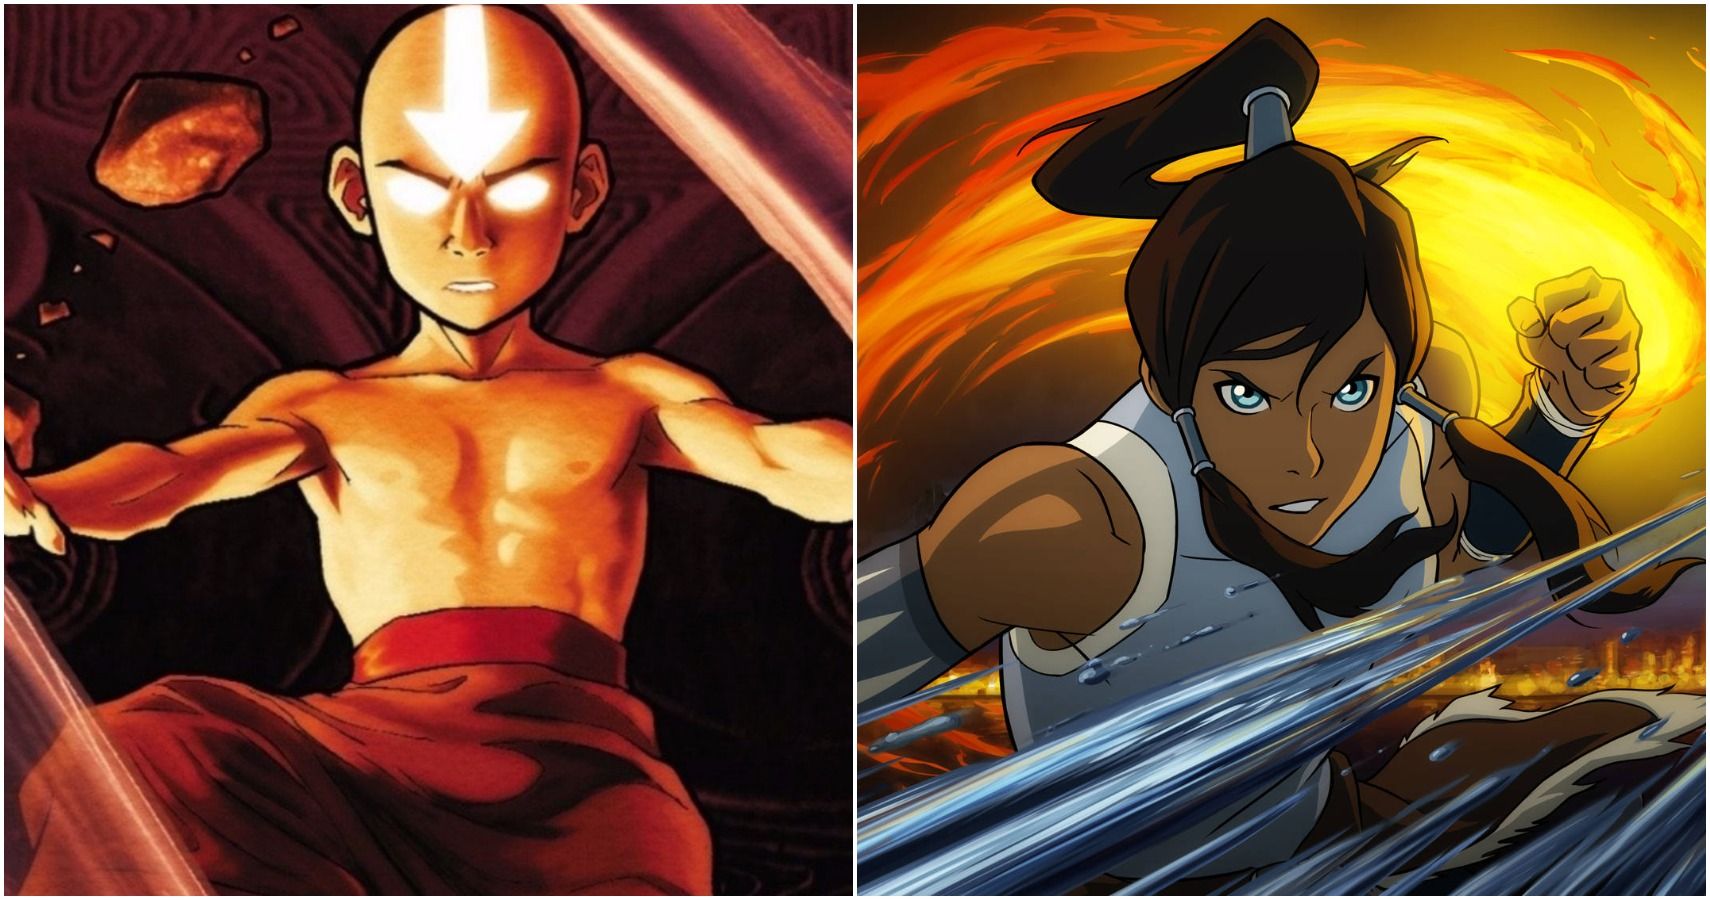 Would Aang beat Korra?